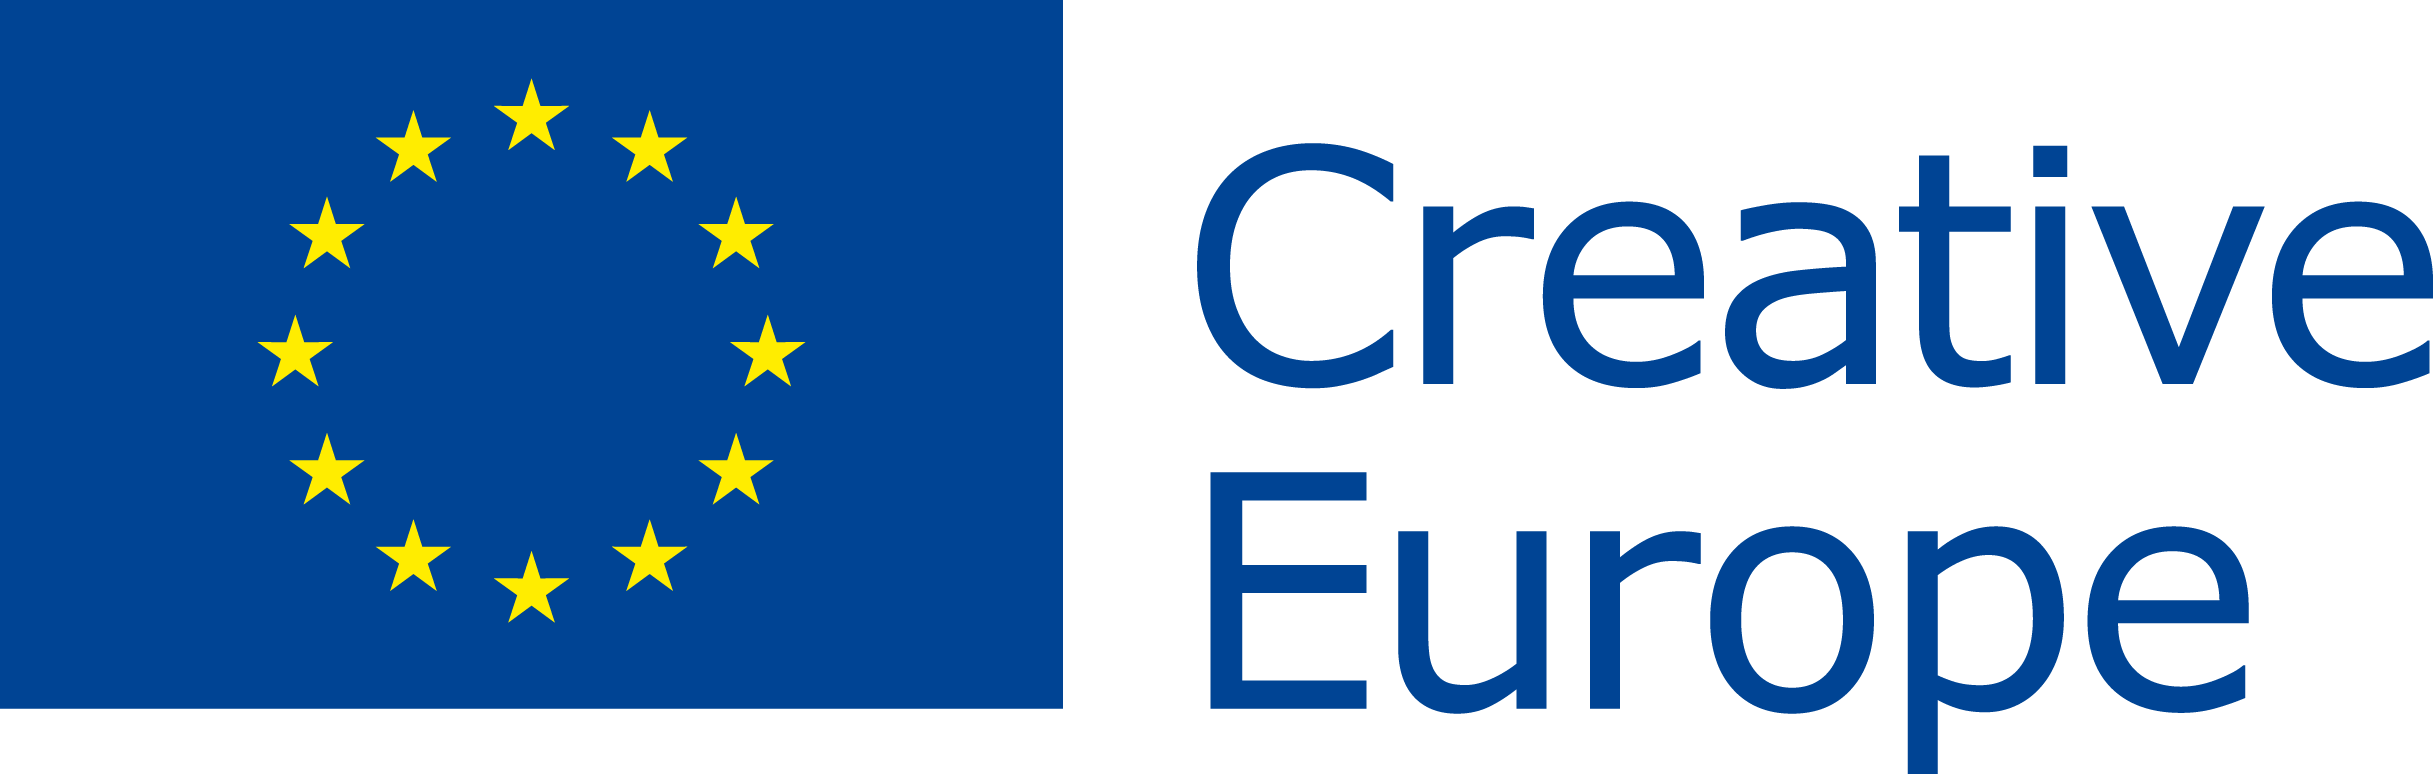 Europe Logo - Creative Europe logo.png